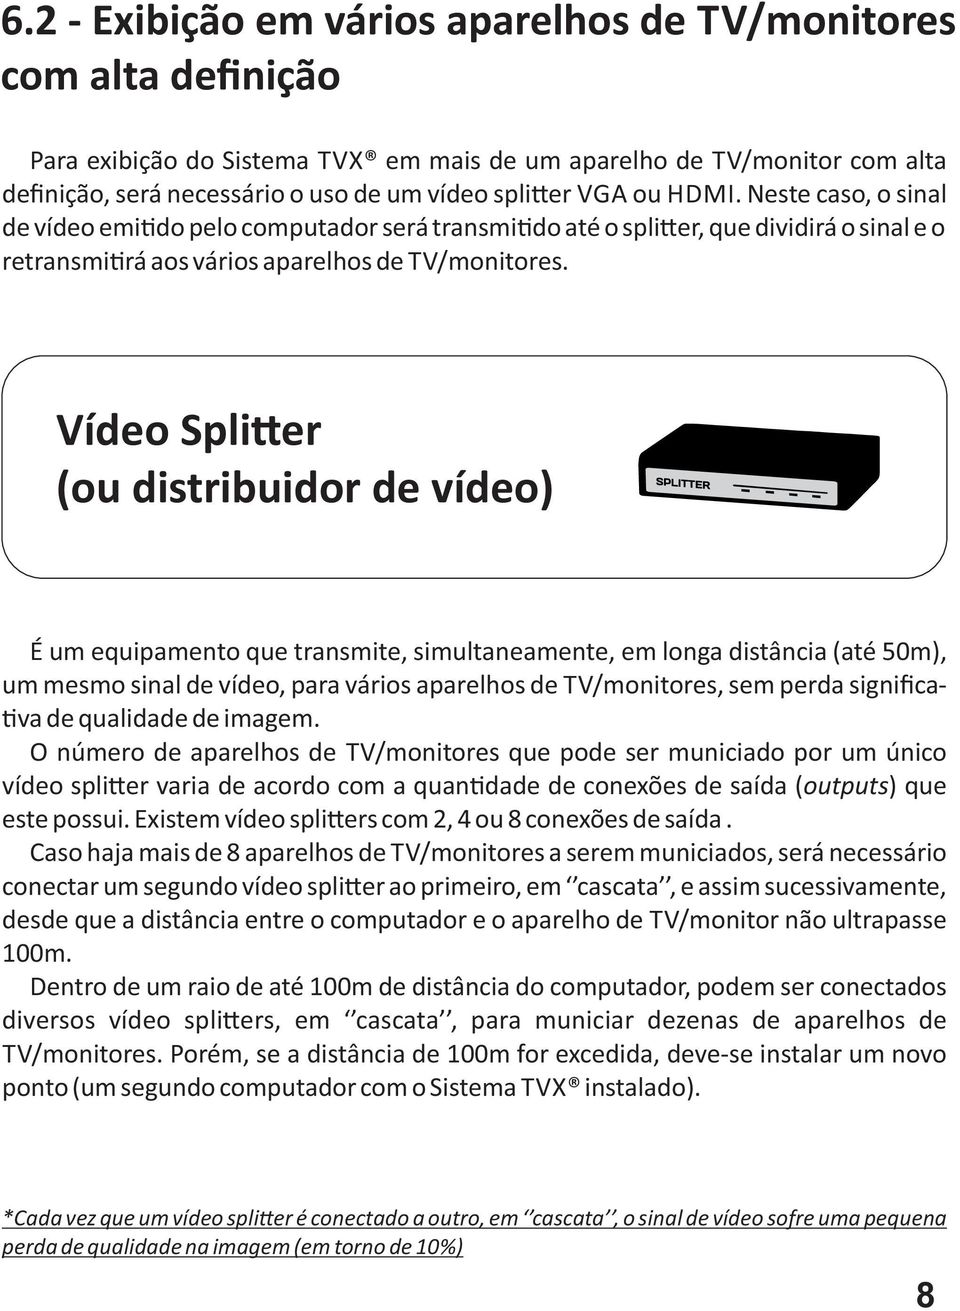 Vídeo Spli er (ou distribuidor de vídeo) É um equipamento que transmite, simultaneamente, em longa distância (até 50m), um mesmo sinal de vídeo, para vários aparelhos de TV/monitores, sem perda